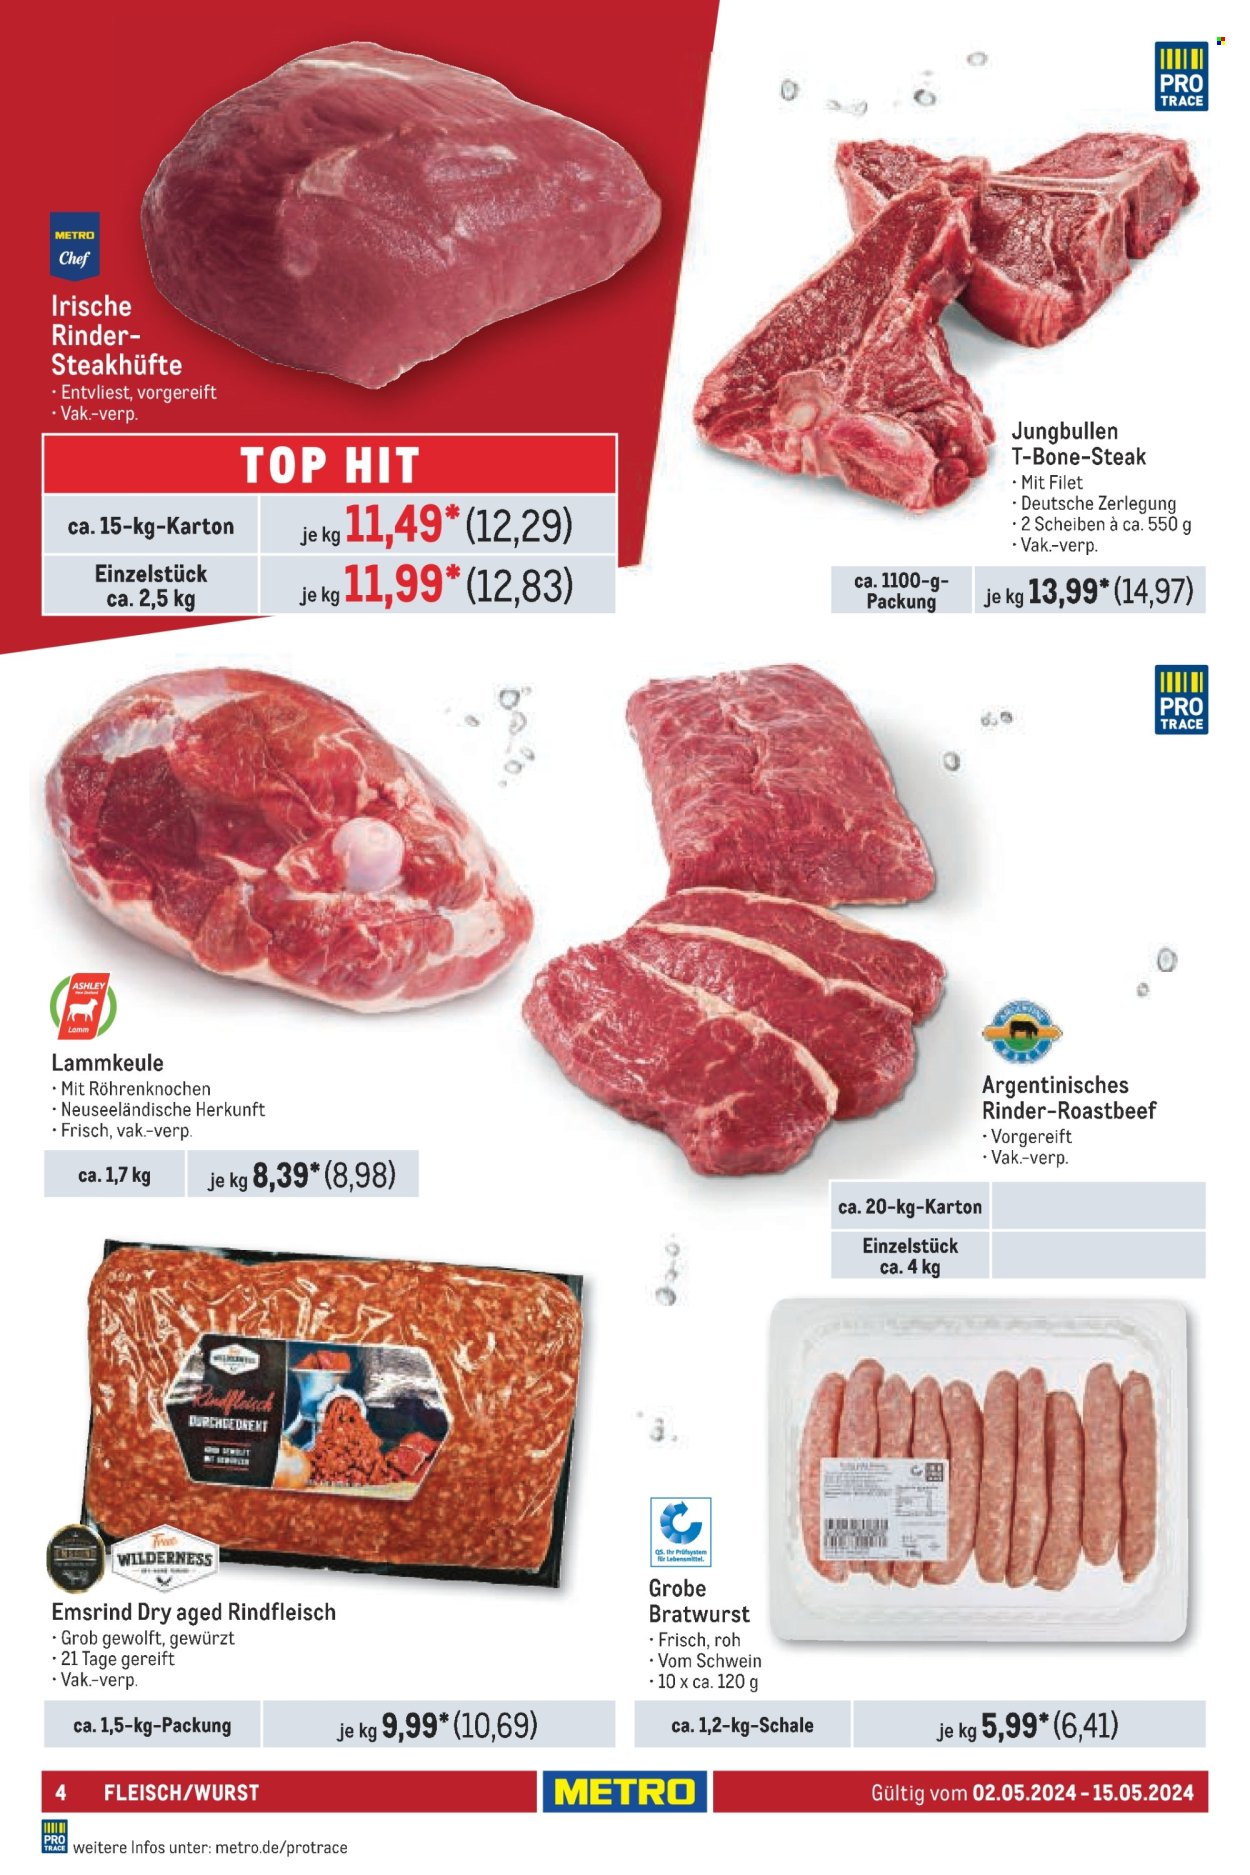 thumbnail - Prospekte Metro - 2.05.2024 - 15.05.2024 - Produkte in Aktion - Steak, Rindfleisch, Roastbeef, Hüftsteak, T-Bone Steak, Schweinefleisch, Lammfleisch, Lammkeule, Bratwurst, Top. Seite 4.